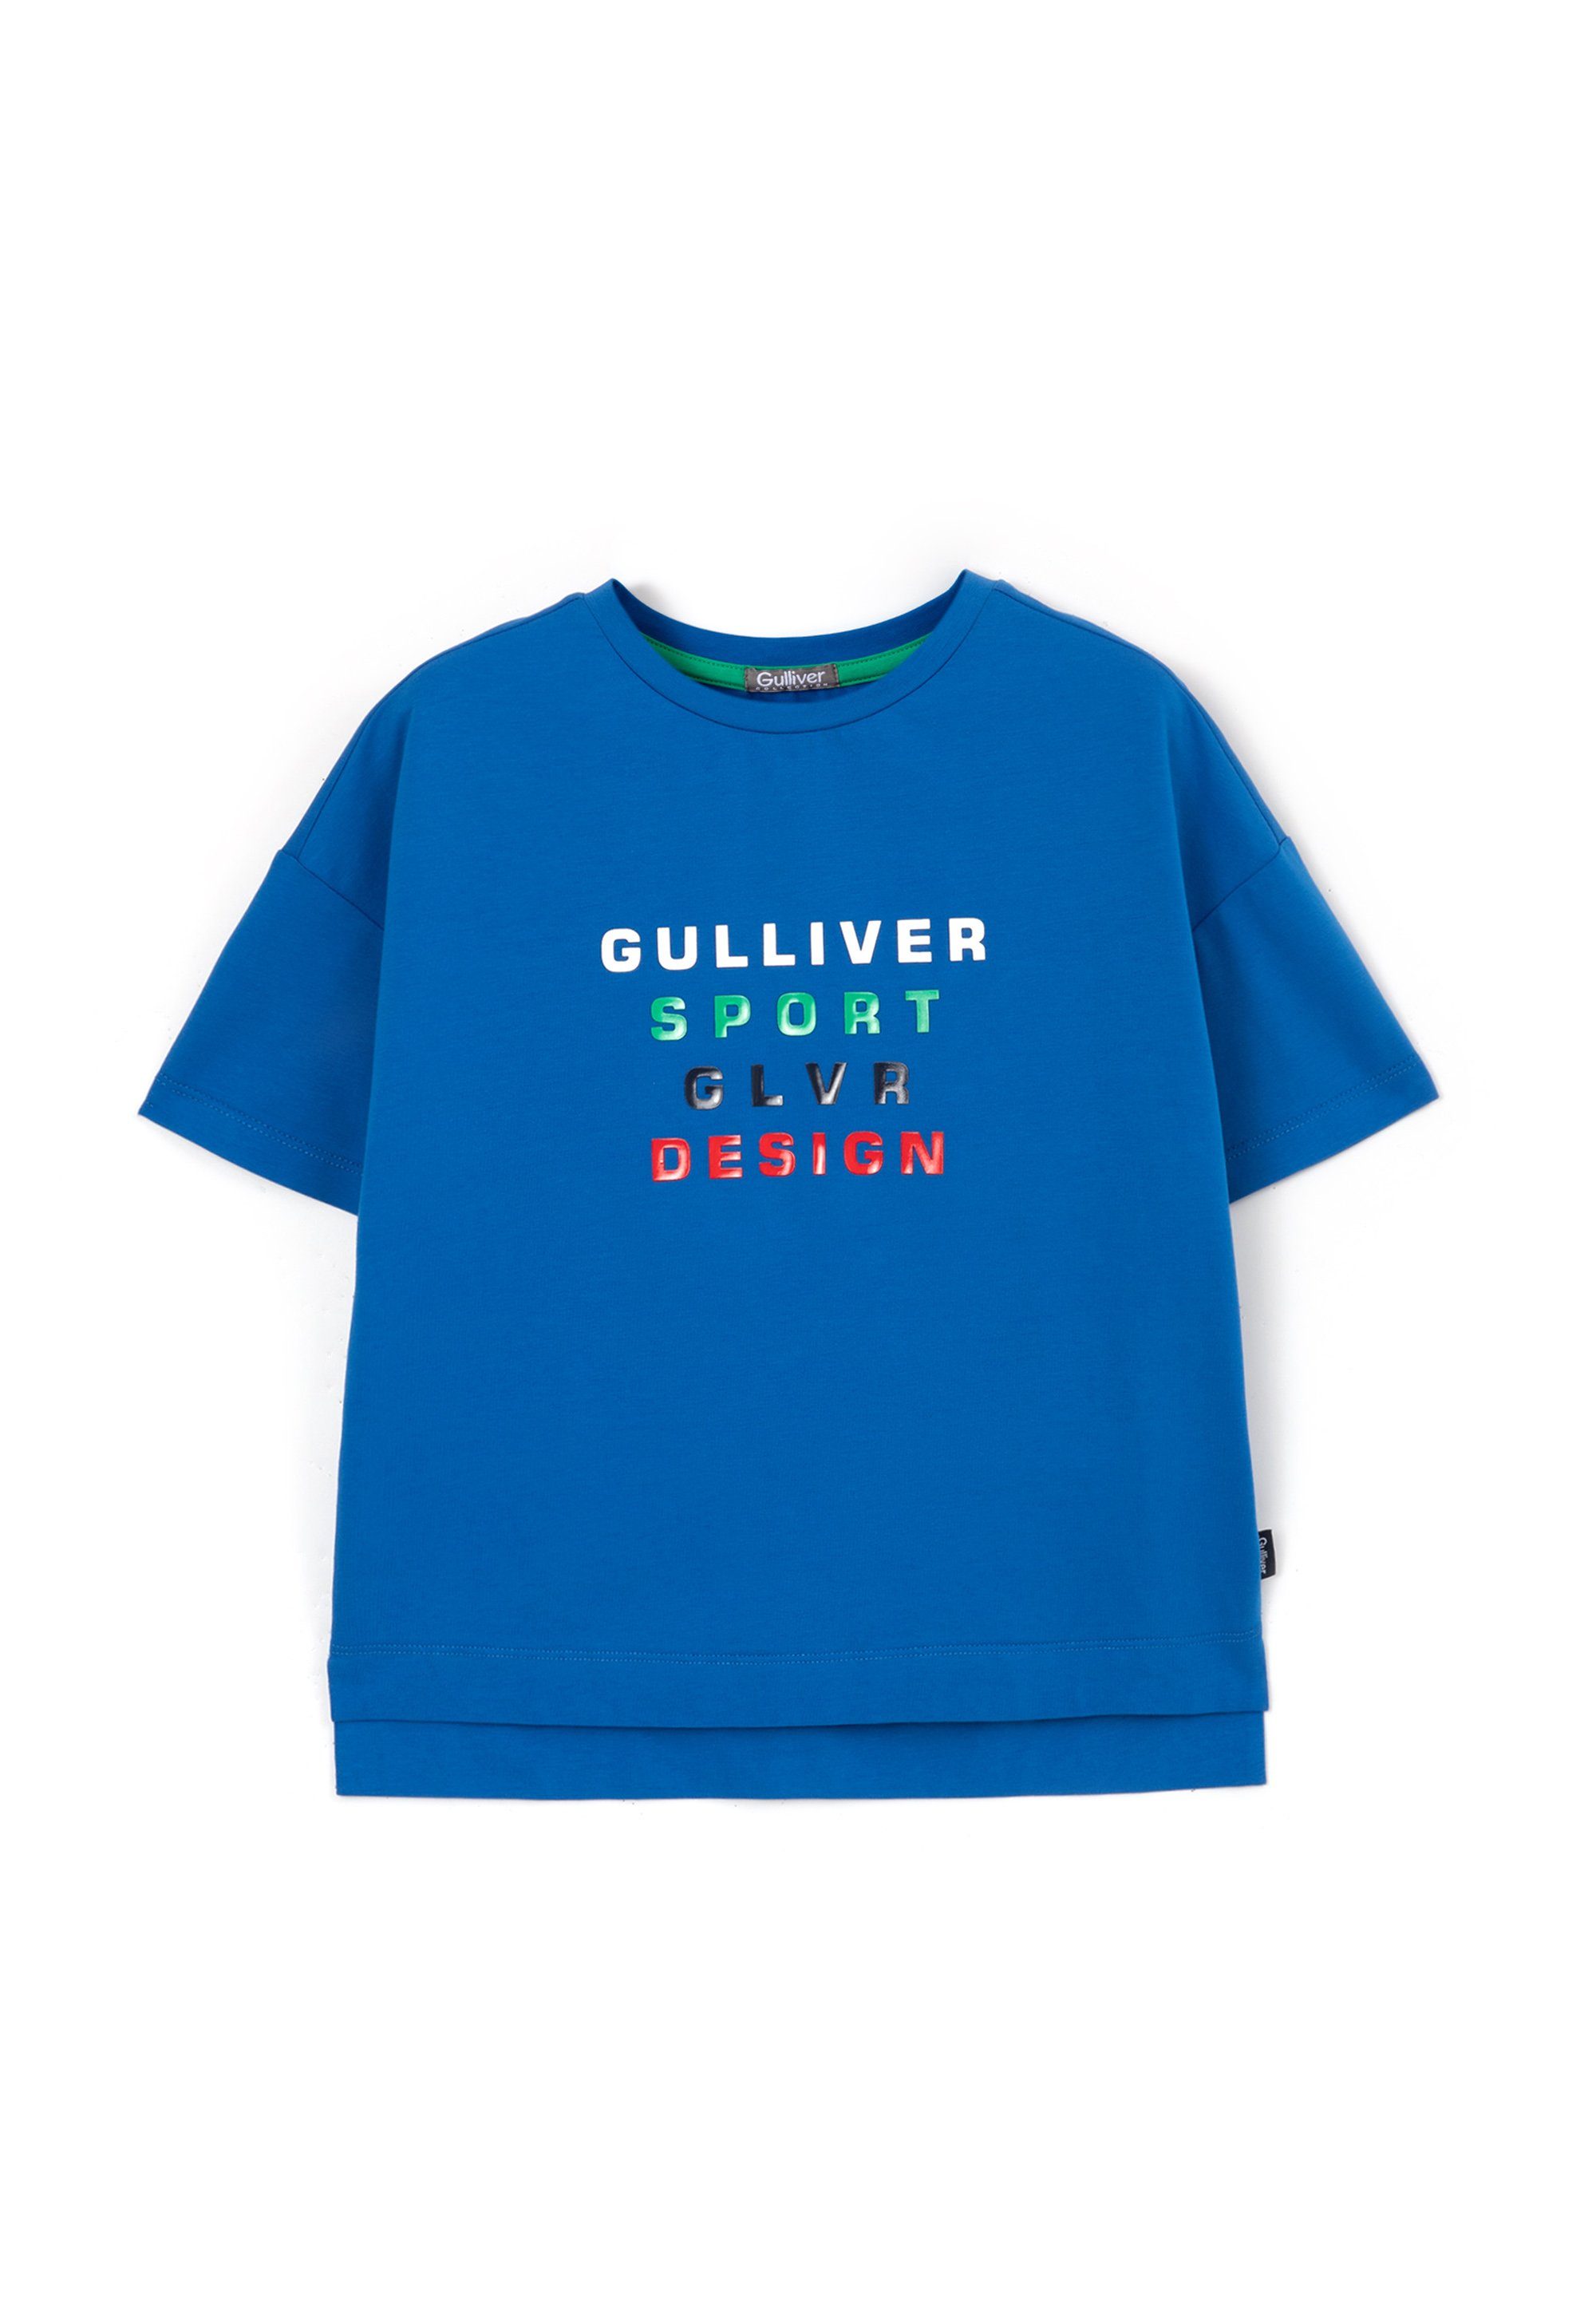 Gulliver T-Shirt mit buntem Rundhalsausschnitt Frontprint, für Stylisches T-Shirt Jungen mit